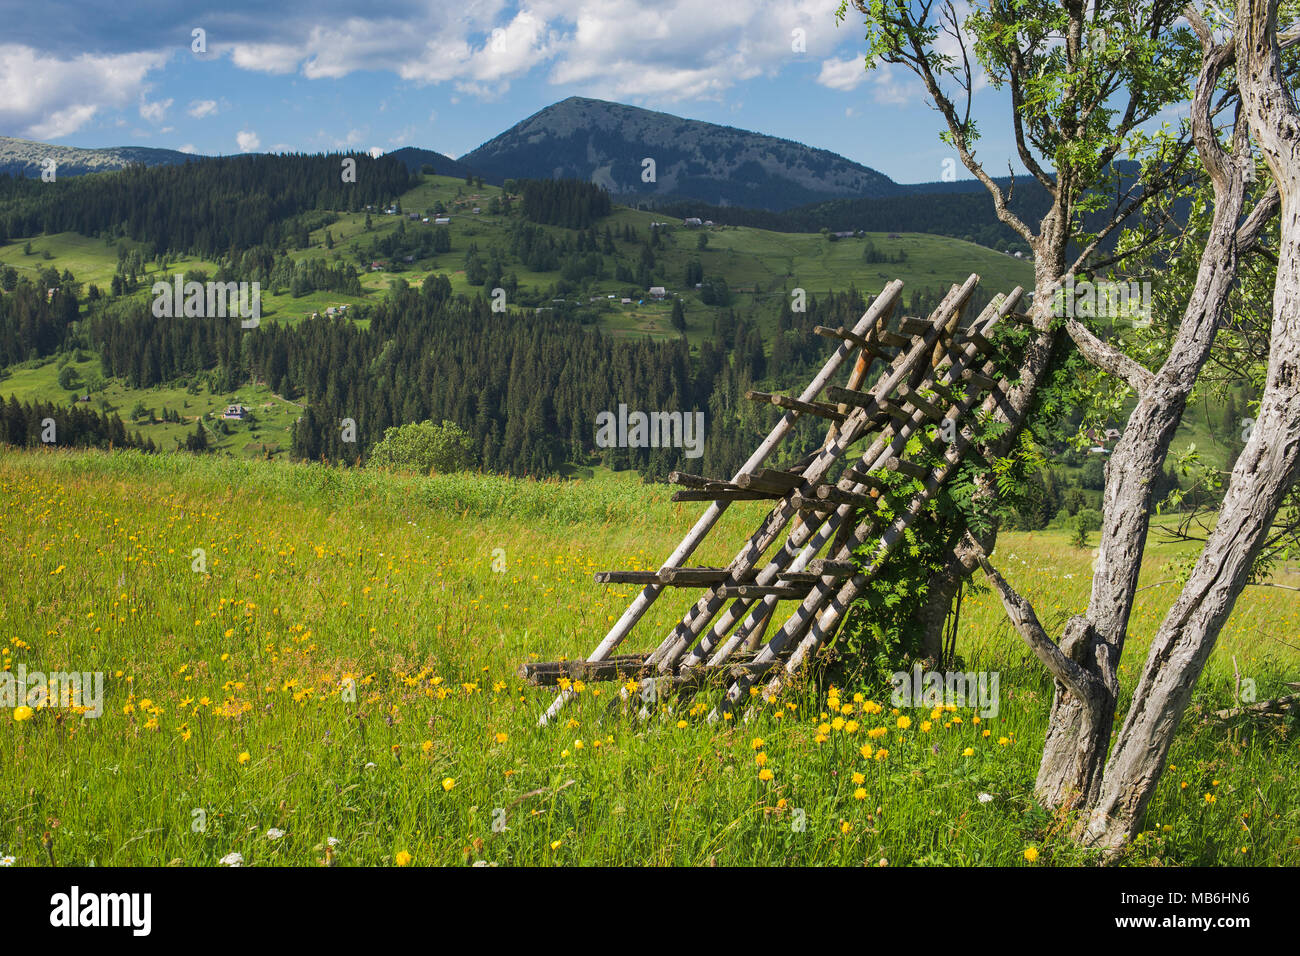 Schönen Sommer Landschaft mit grünen Gras Wiese voll mit gelben Blumen, Bäume, Berge und blauer Himmel. Dorf in der Ferne. Horizontale colo Stockfoto